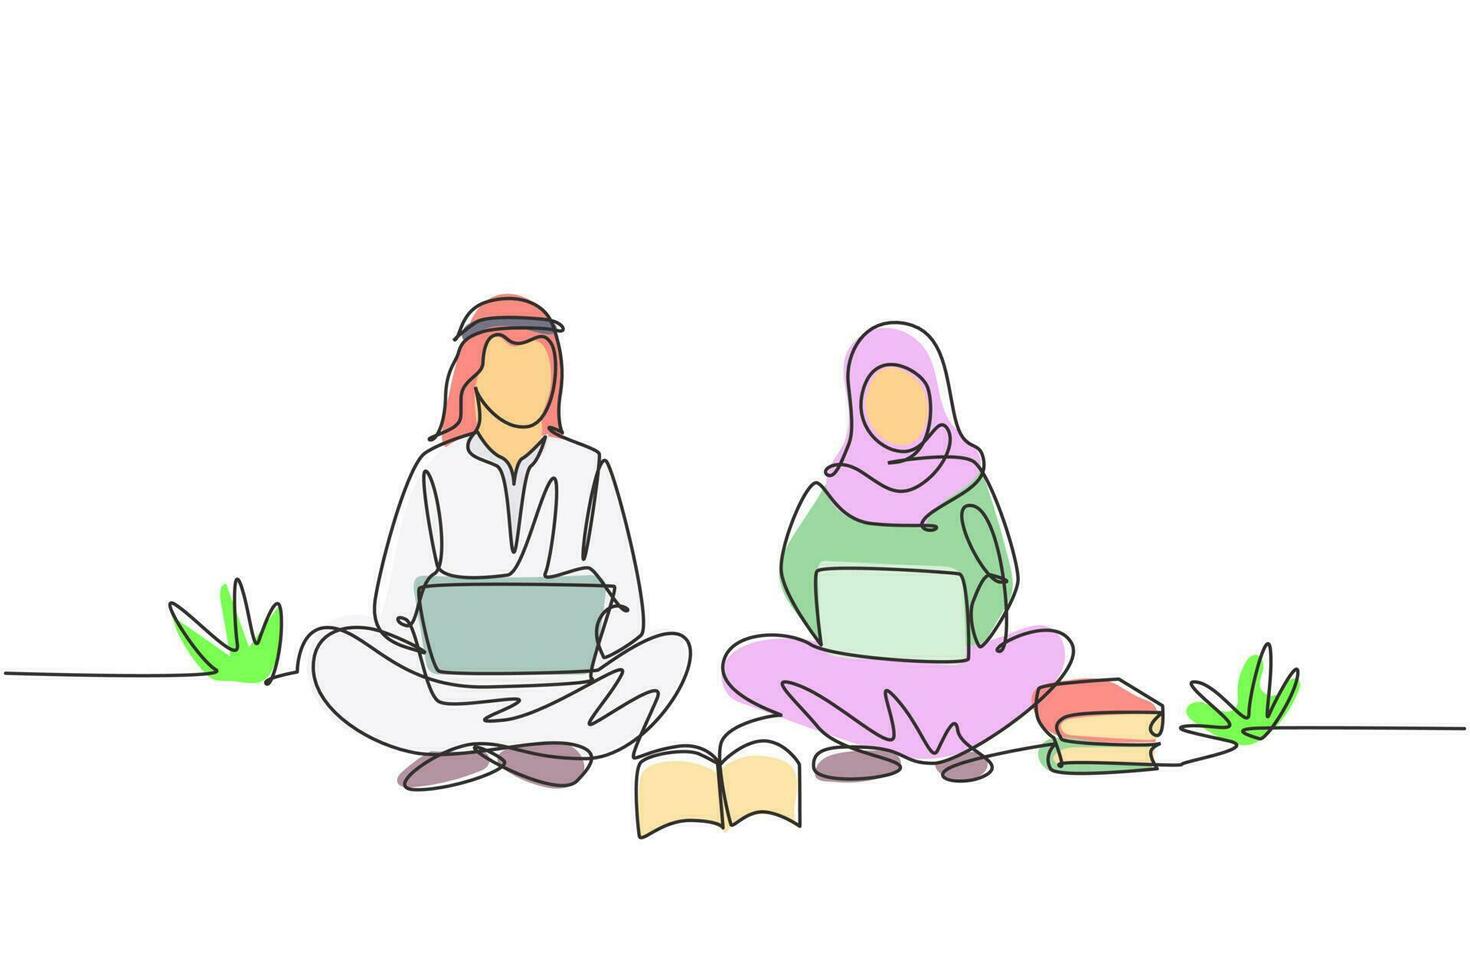 singolo disegno a tratteggio coppia araba con laptop seduti insieme al parco. freelance, apprendimento a distanza, corsi online, concetto di studio. illustrazione vettoriale grafica di disegno di disegno di linea continua